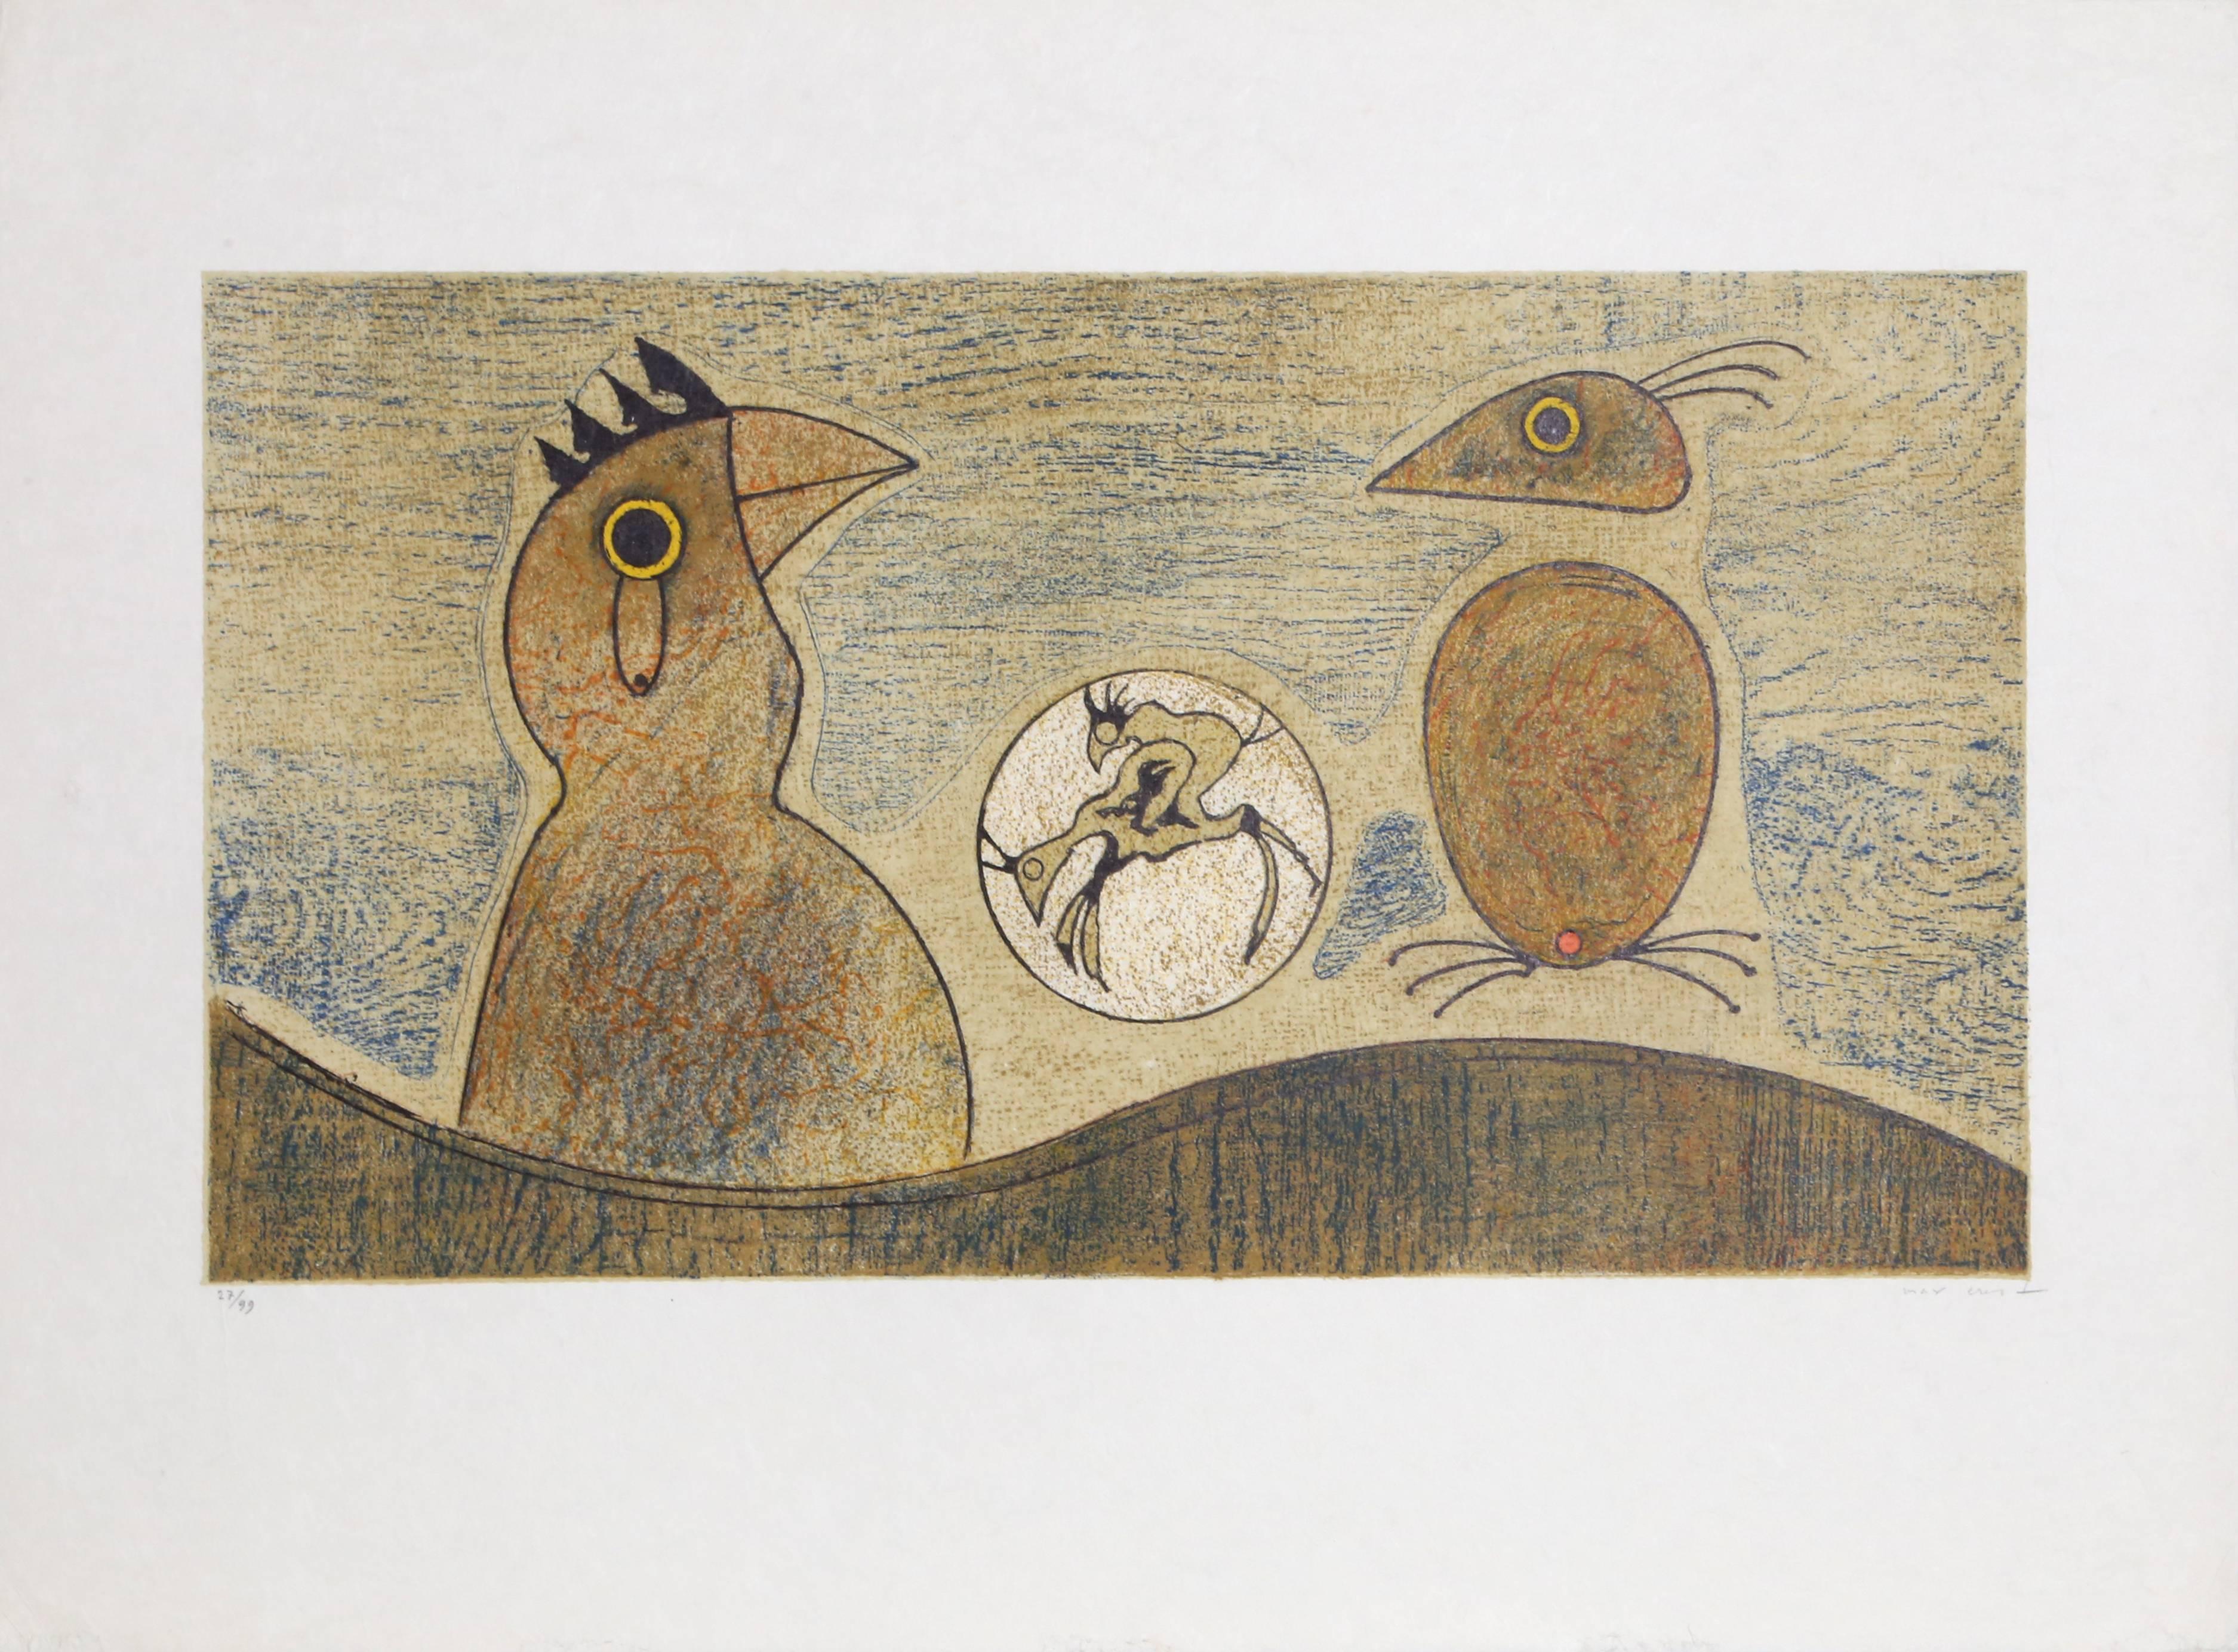 Artistics : Max Ernst, Allemand (1891 - 1976)
Titre : Oiseaux Souterrains
Année : 1975
Support : Lithographie sur papier Japon, signée et numérotée au crayon
Edition : 99
Taille de l'image : 13.5 x 24.5 pouces
Taille : 22.5 x 30 in. (57.15 x 76.2 cm)